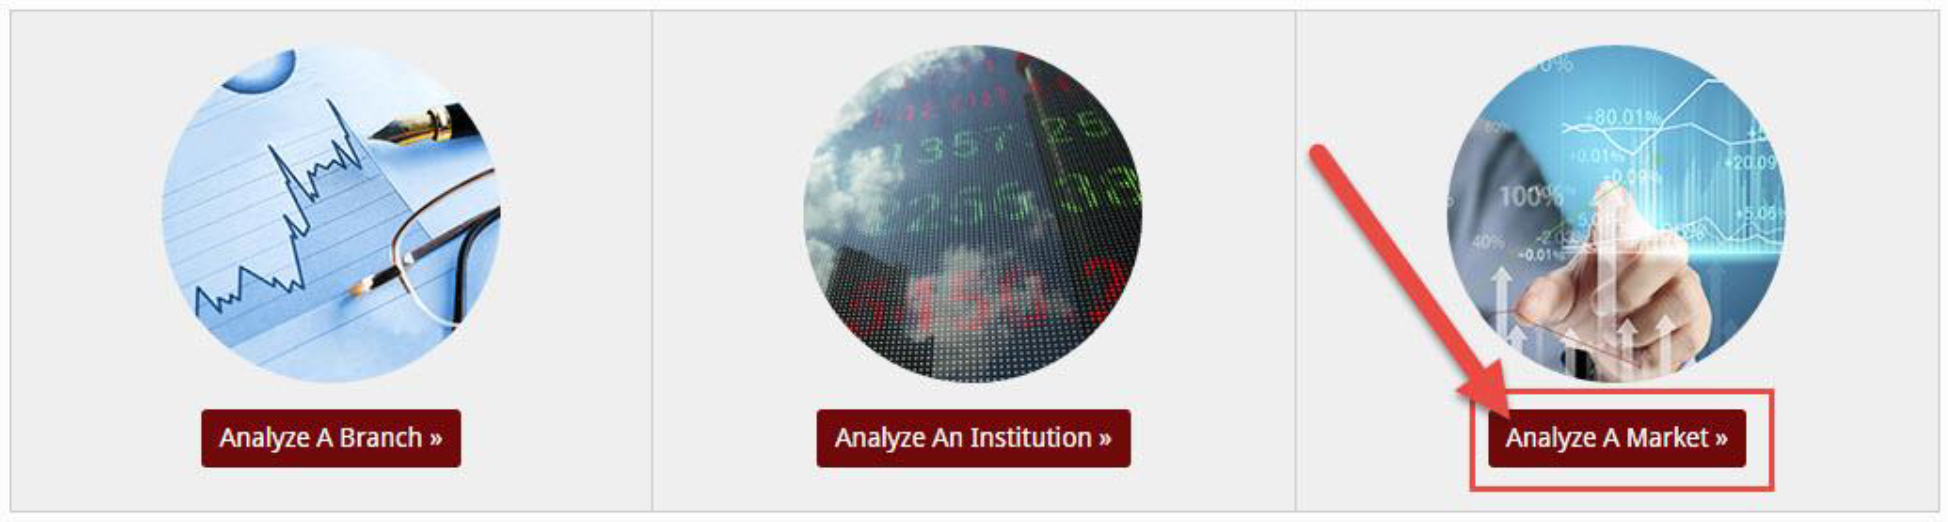 analyze-market-1